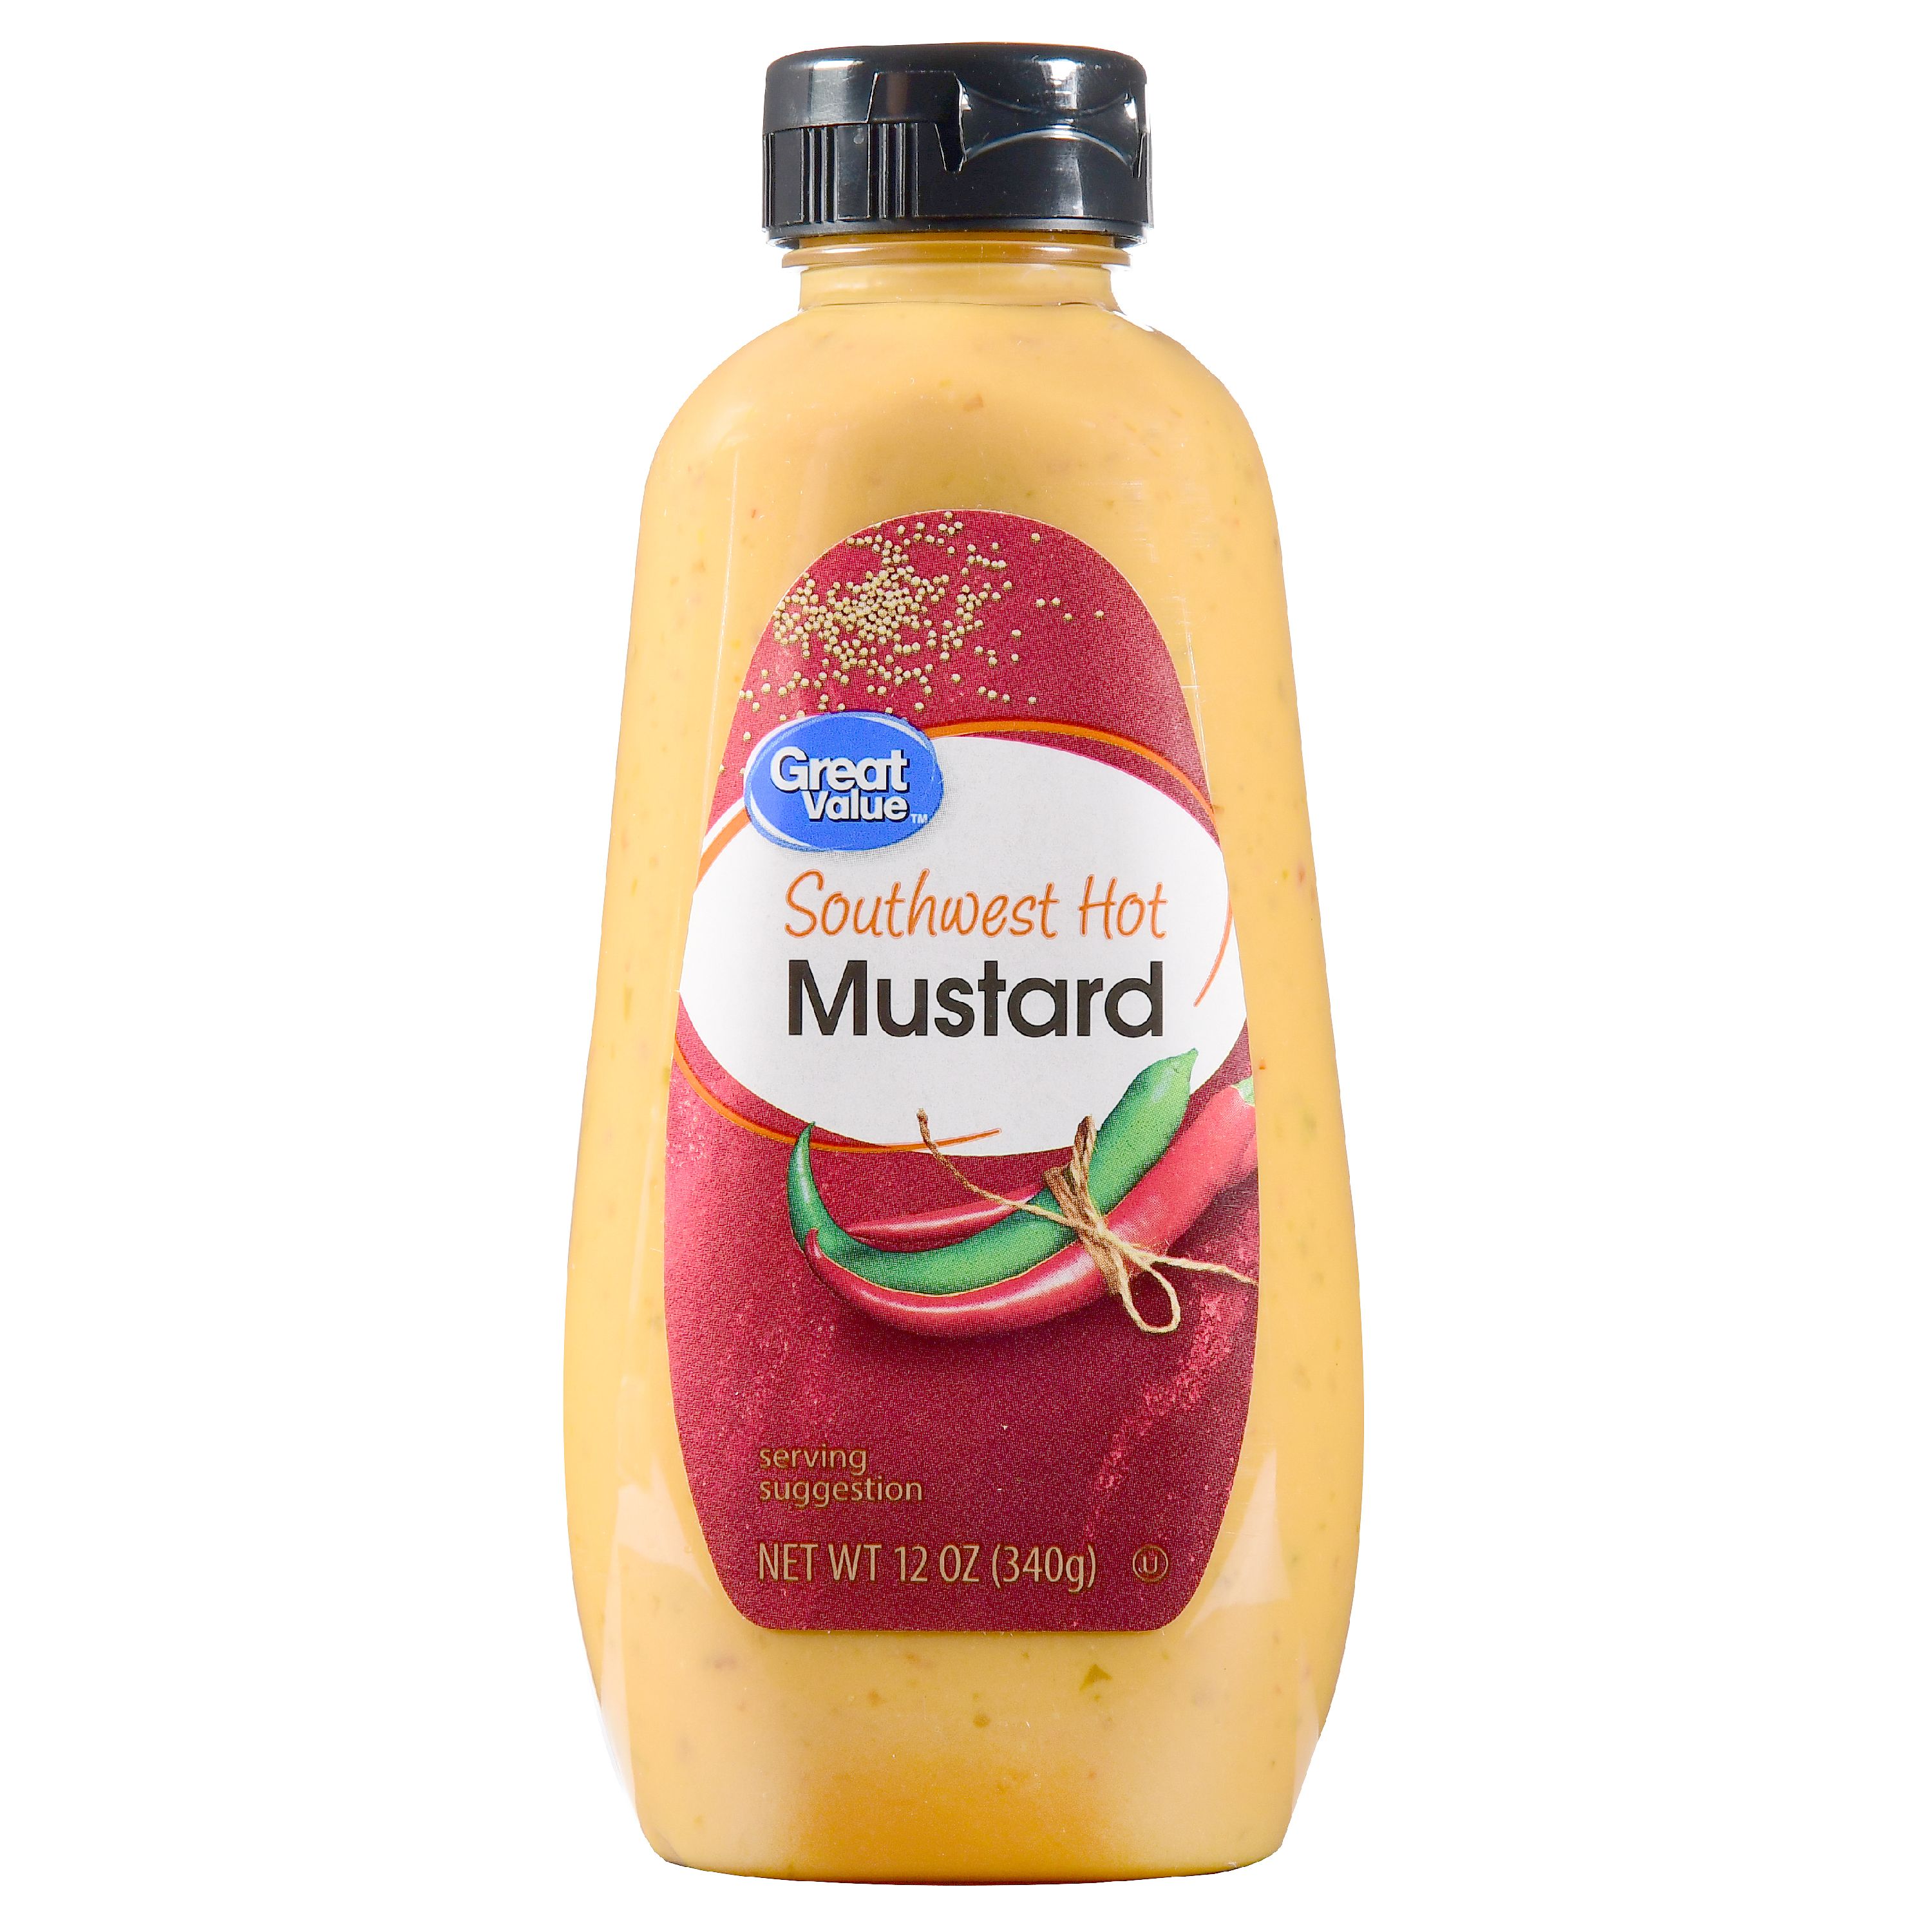 Great Value Southwest Hot Mustard, 12 Oz Image